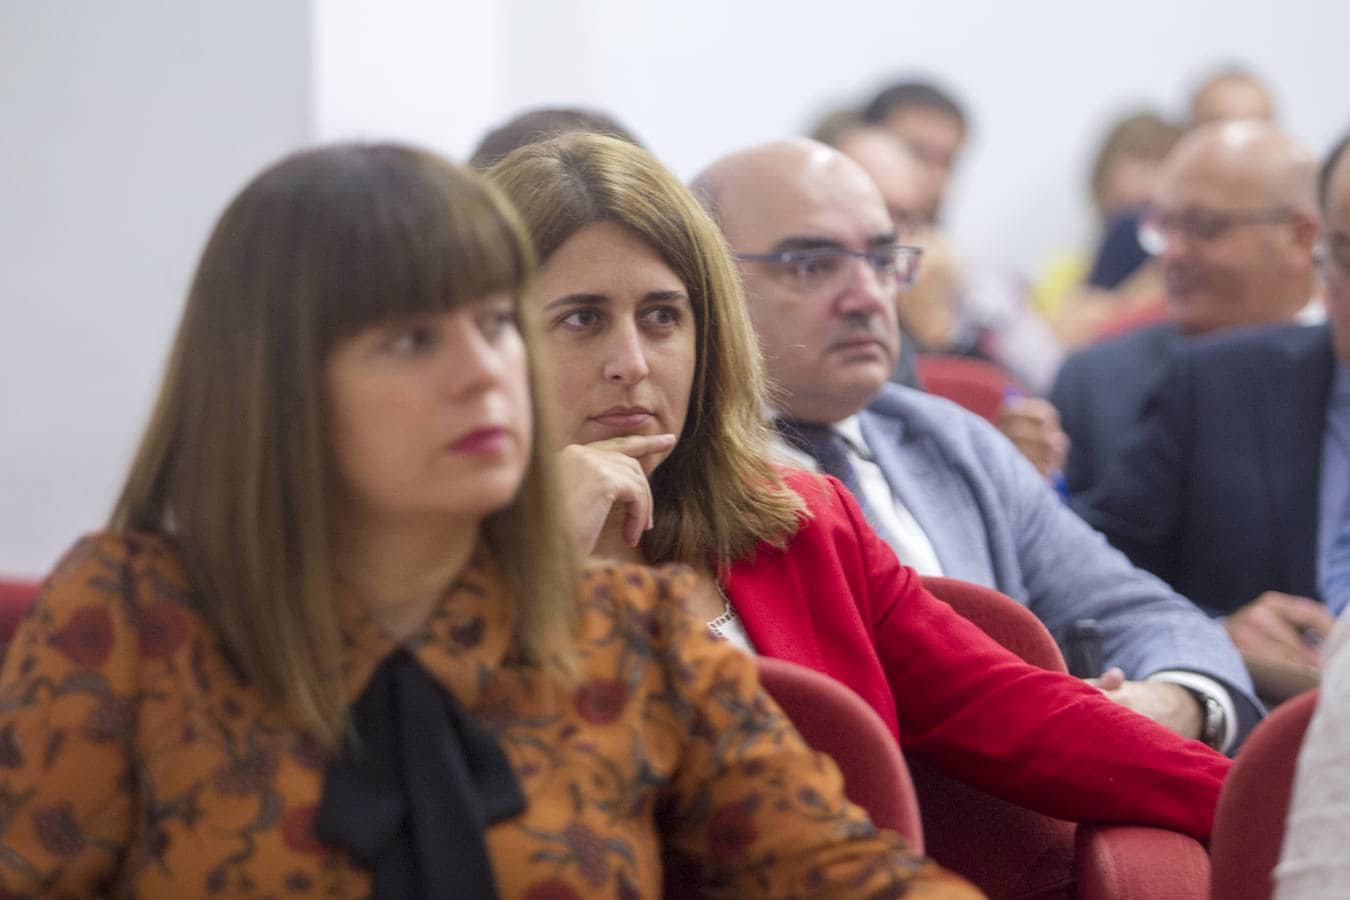 Veinte letrados, profesores universitarios y representantes políticos procedentes de diversos puntos de la geografía española debaten sobre la reforma de la Constitución con motivo de su 40 aniversario en el Parlamento de Cantabria